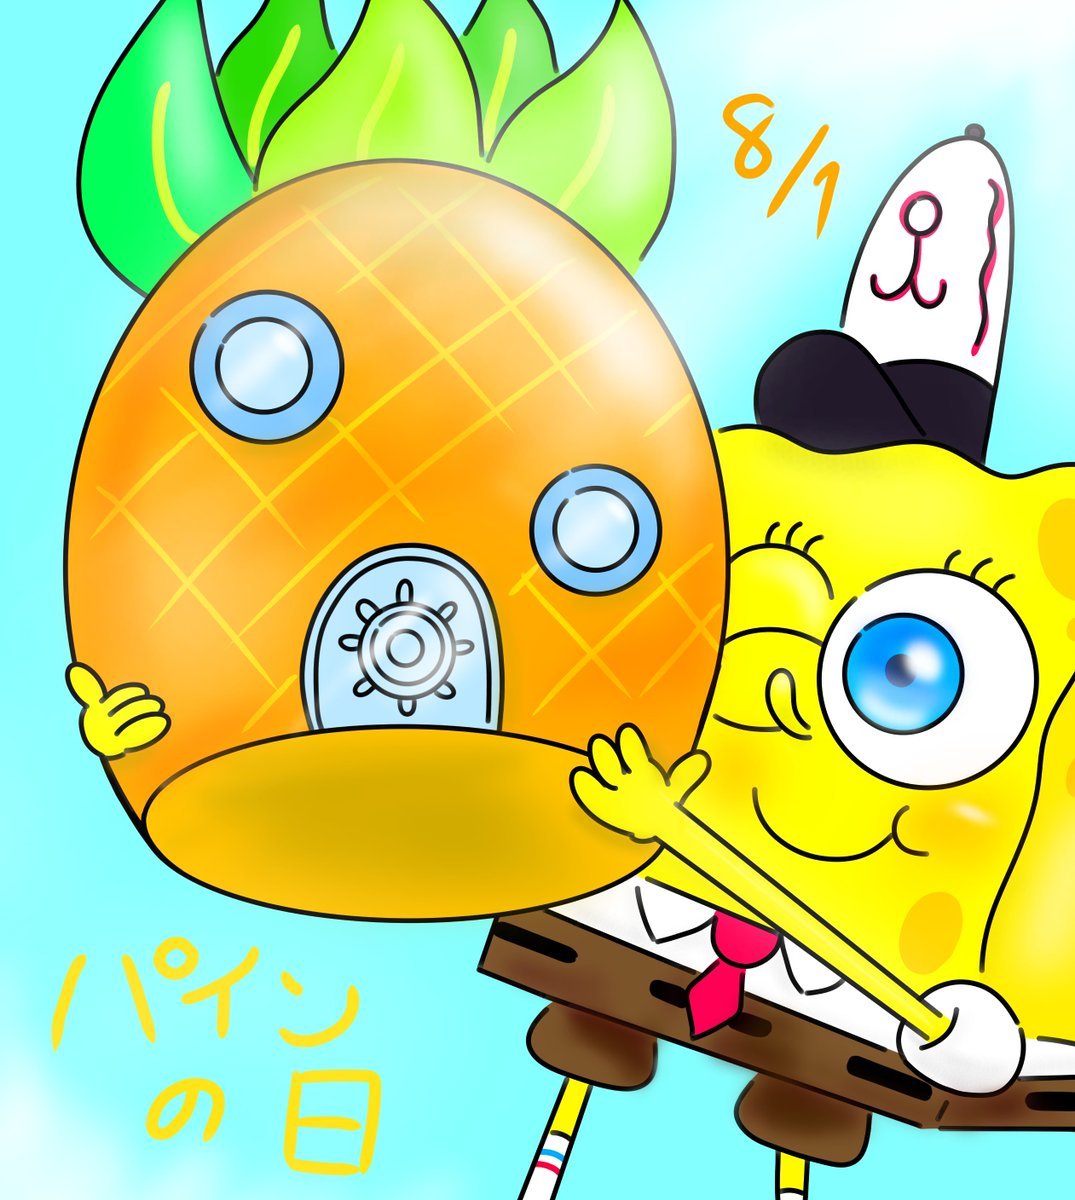 Lain スクエアスポンジパンツボブ スポンジボブ スポンジボブ大好き 絵描きさんと繋がりたい パンツの日 Spongebob パトリック サンディ カーニさん プランクトン イカルド T Co 6yrntg8bso T Co Pkfxn9wfqy